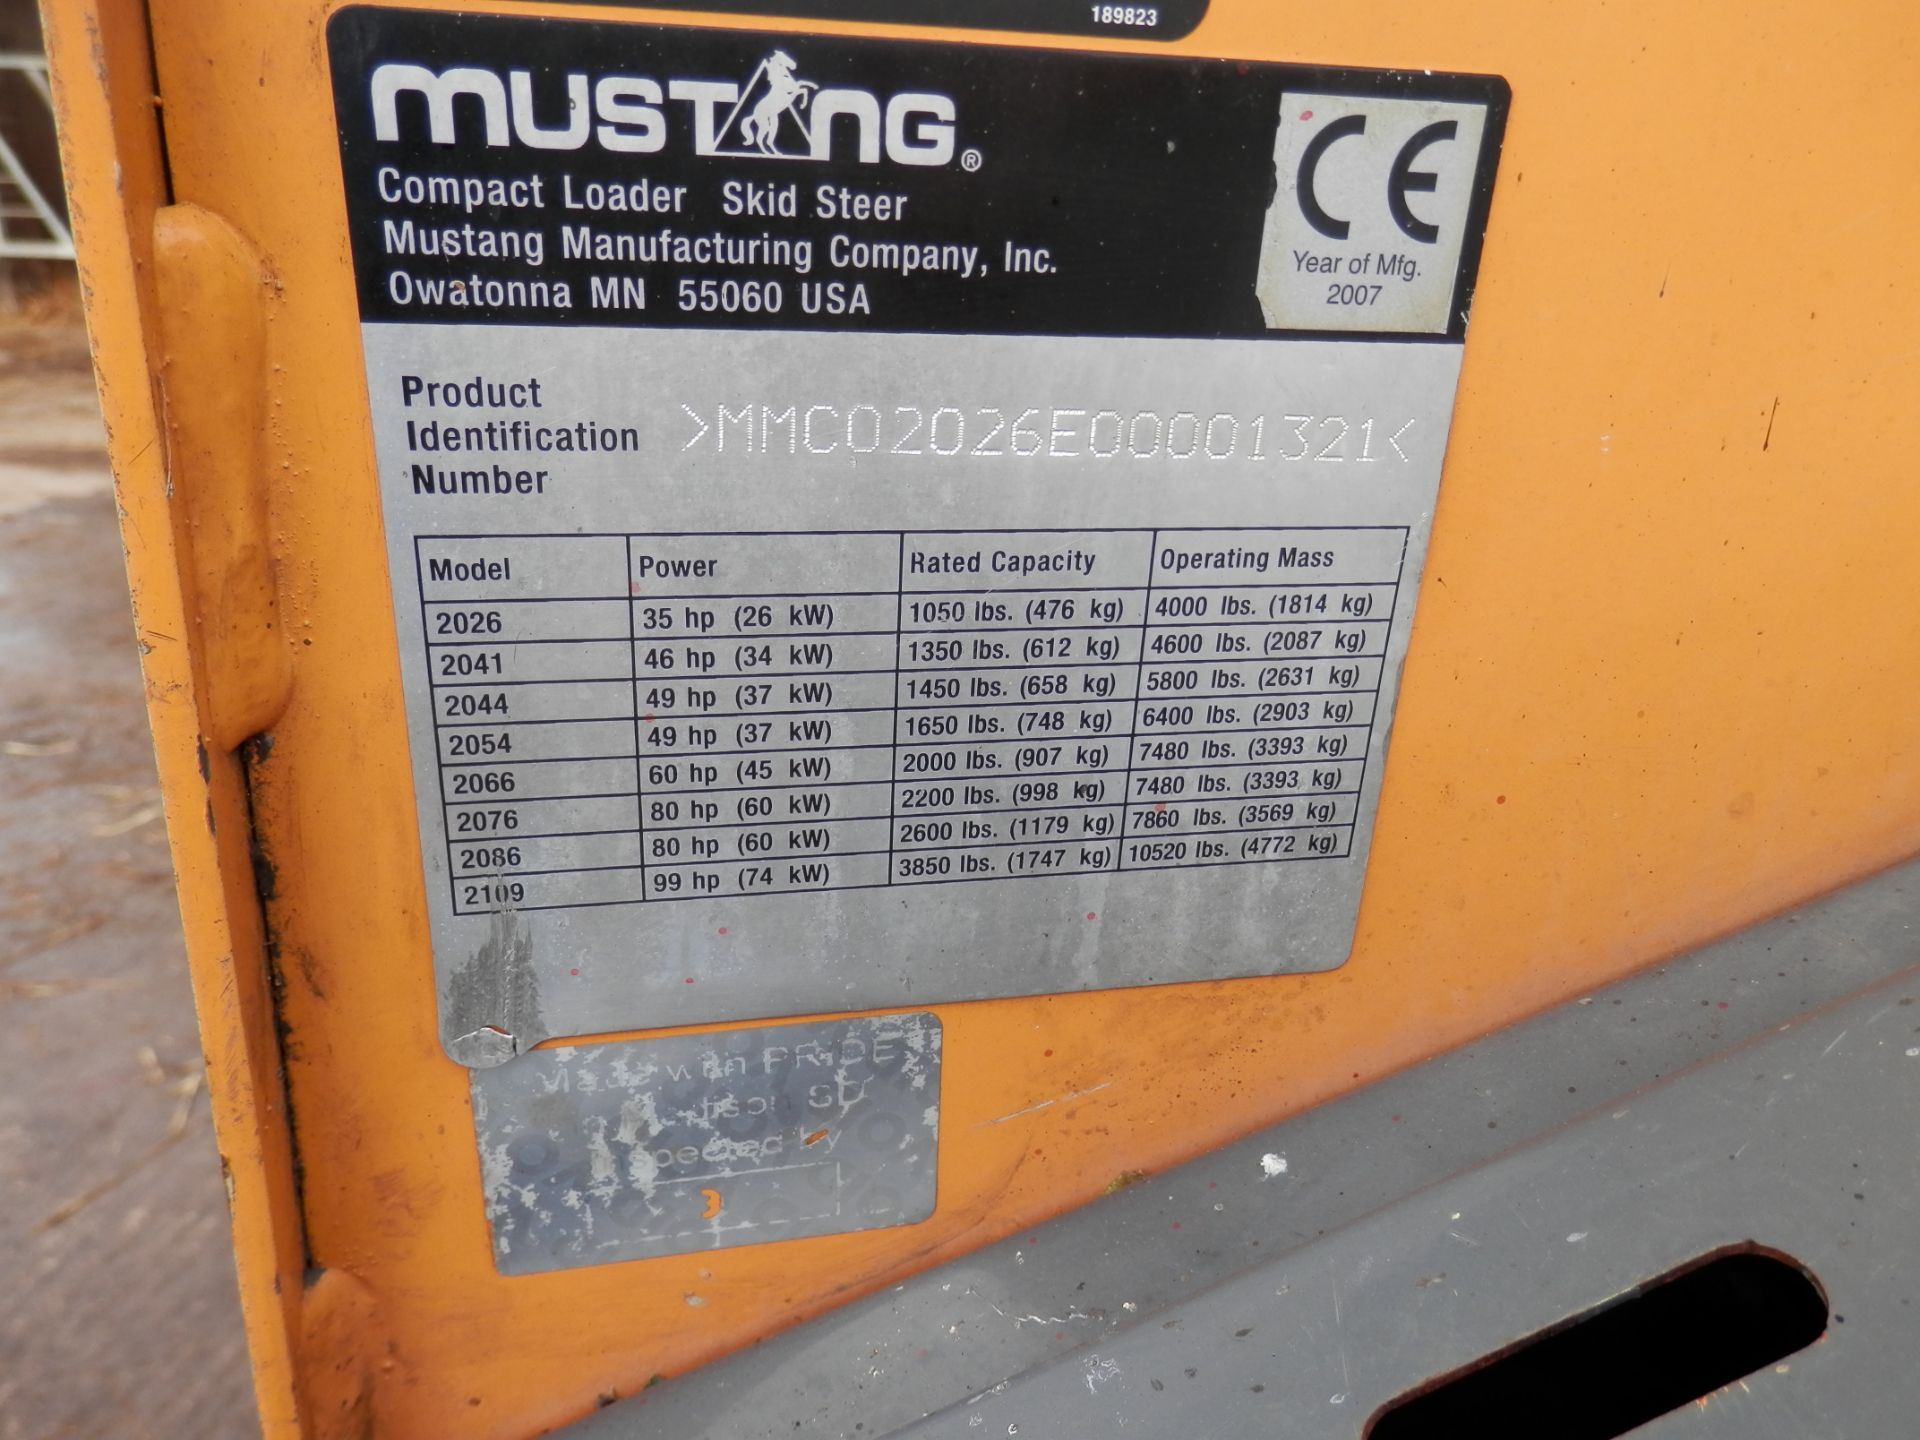 2007 MUSTANG SKID STEER 1.8 TONNE 35 BHP DIESEL ENGINE - Image 2 of 7